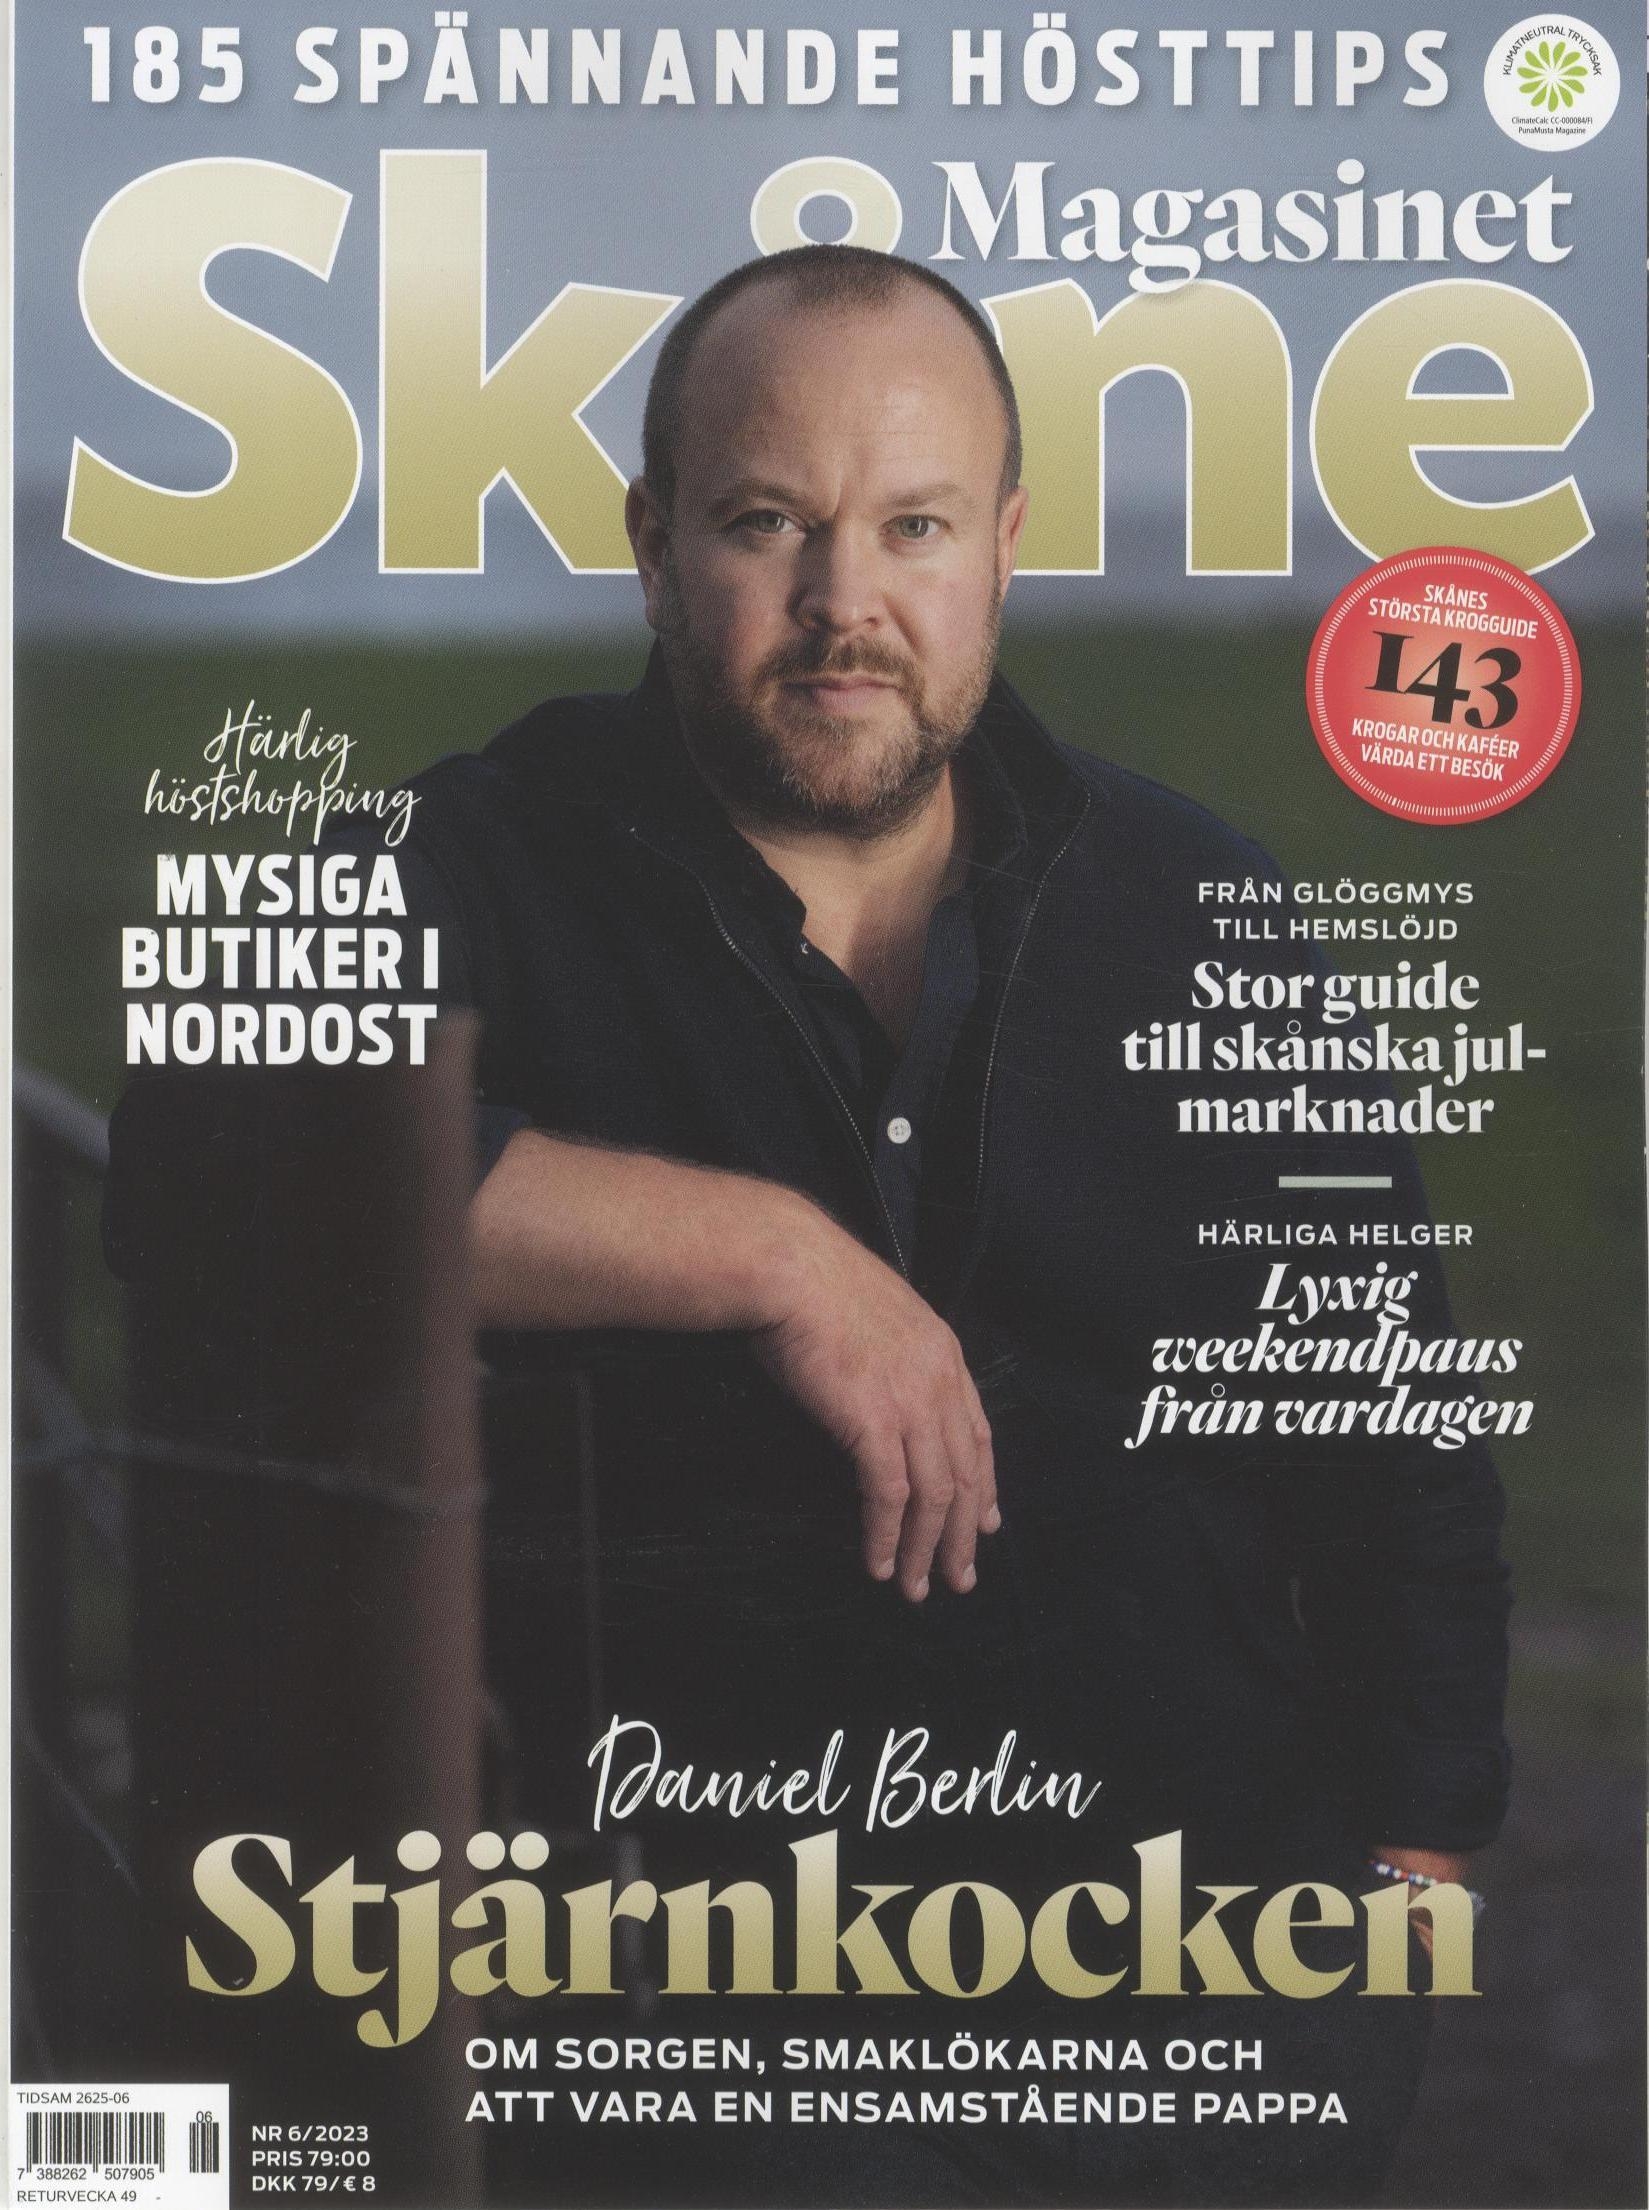 Magasinet Skåne